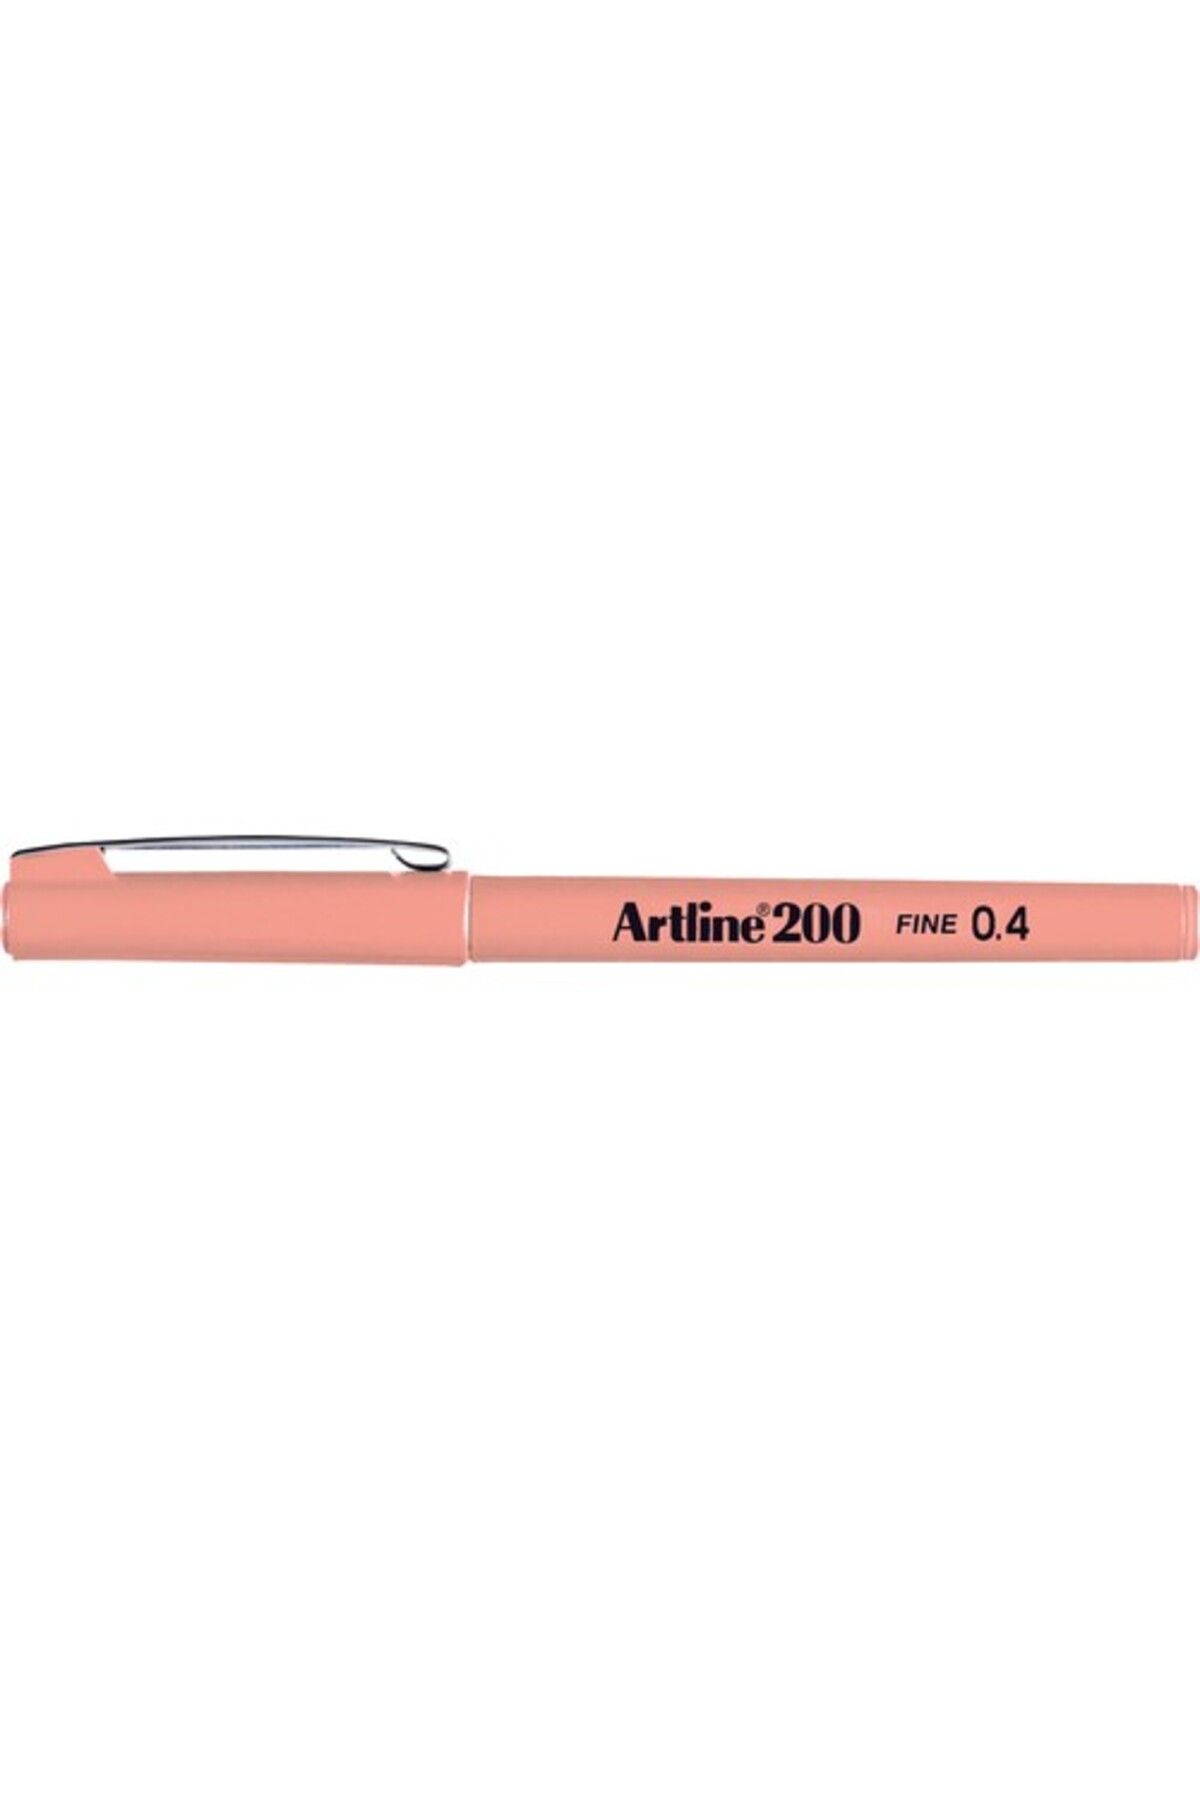 artline 200n Fine Keçe Uçlu Yazı Kalemi 0,4 Mm Kayısı